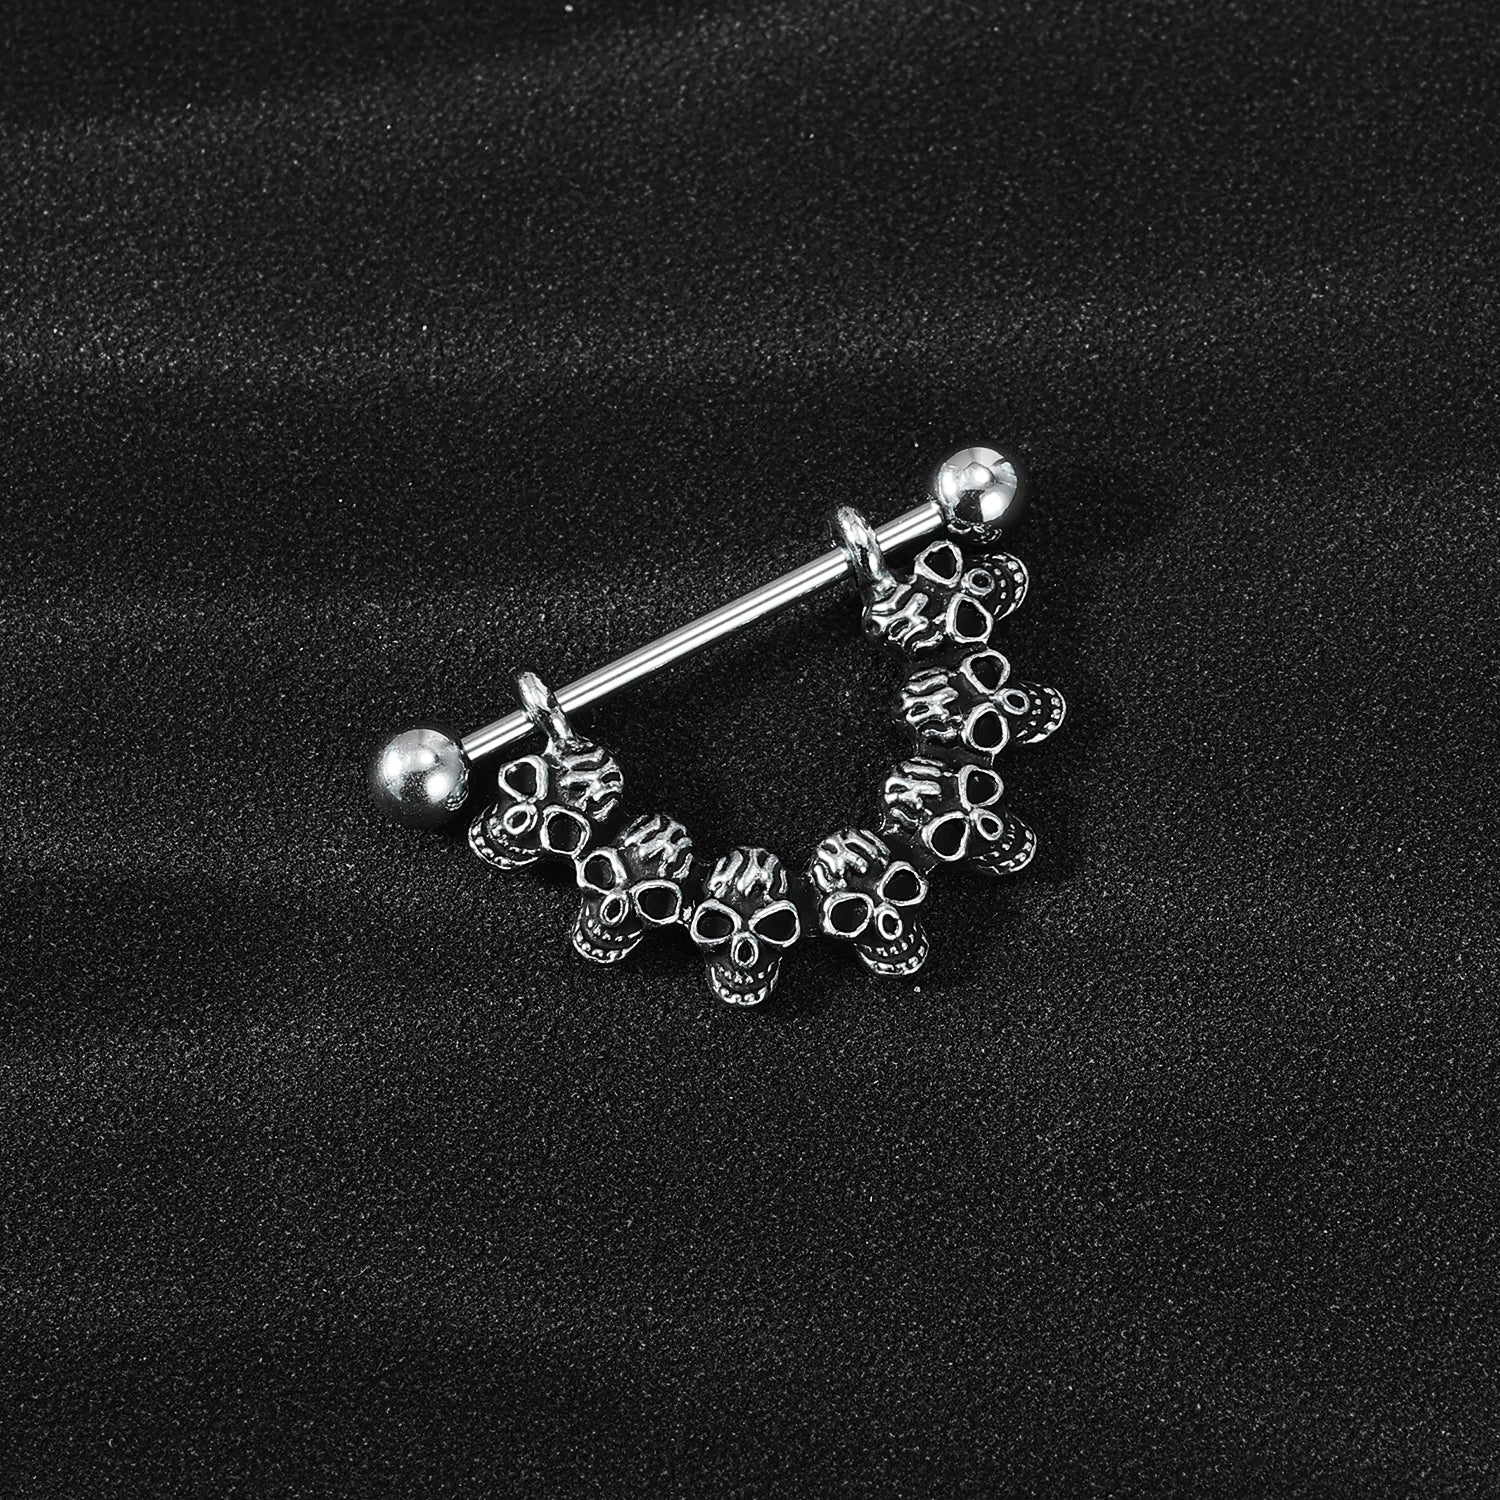 2Pcs 14G Skull Nipple Rings Stainless Steel Nipple Piercing Barbell Jewelry